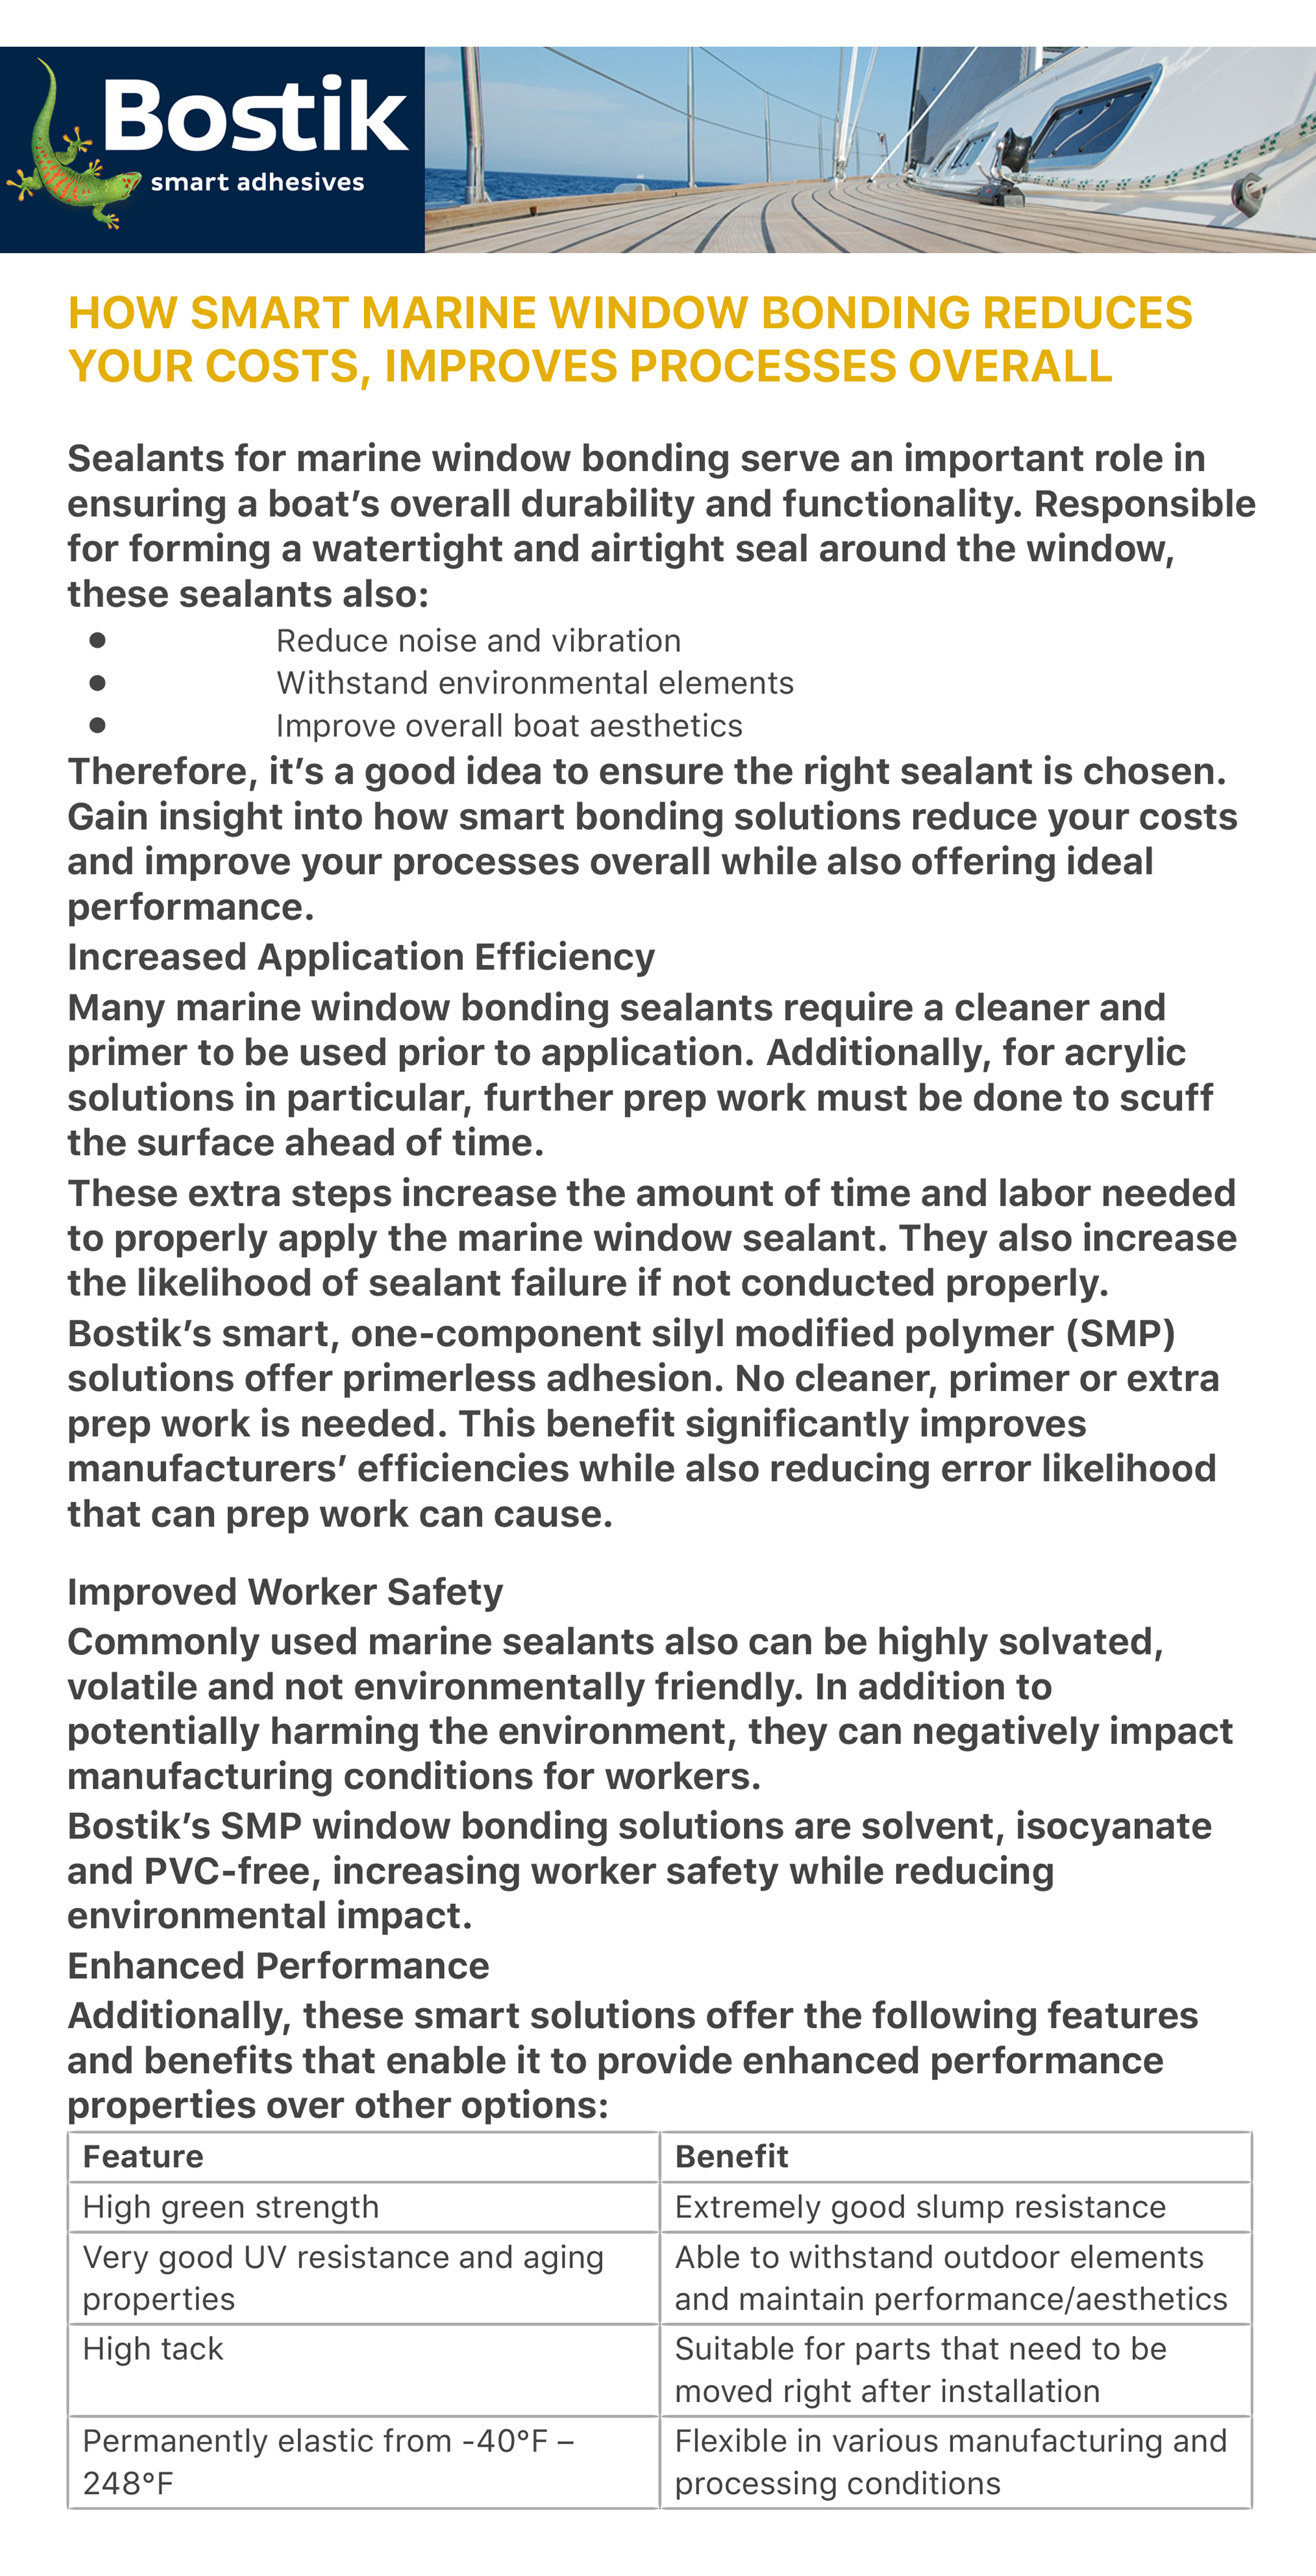 Bostik Marine Adhesives